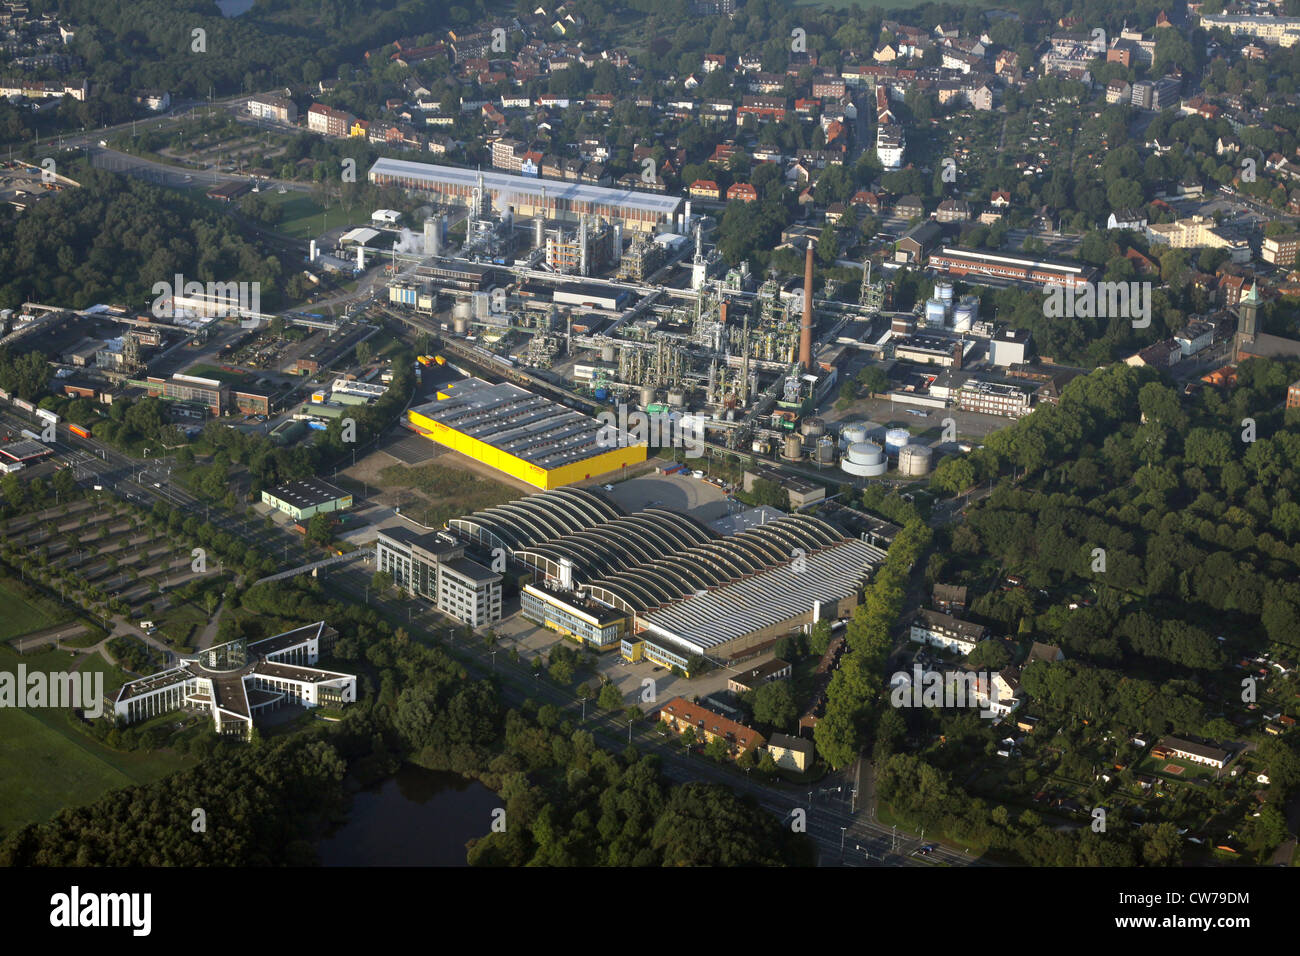 Il centro amministrativo di GEA a Bochum e nuova costruzione di mobili, discount Herne-Eickel in background, in Germania, in Renania settentrionale-Vestfalia, la zona della Ruhr, Bochum Foto Stock